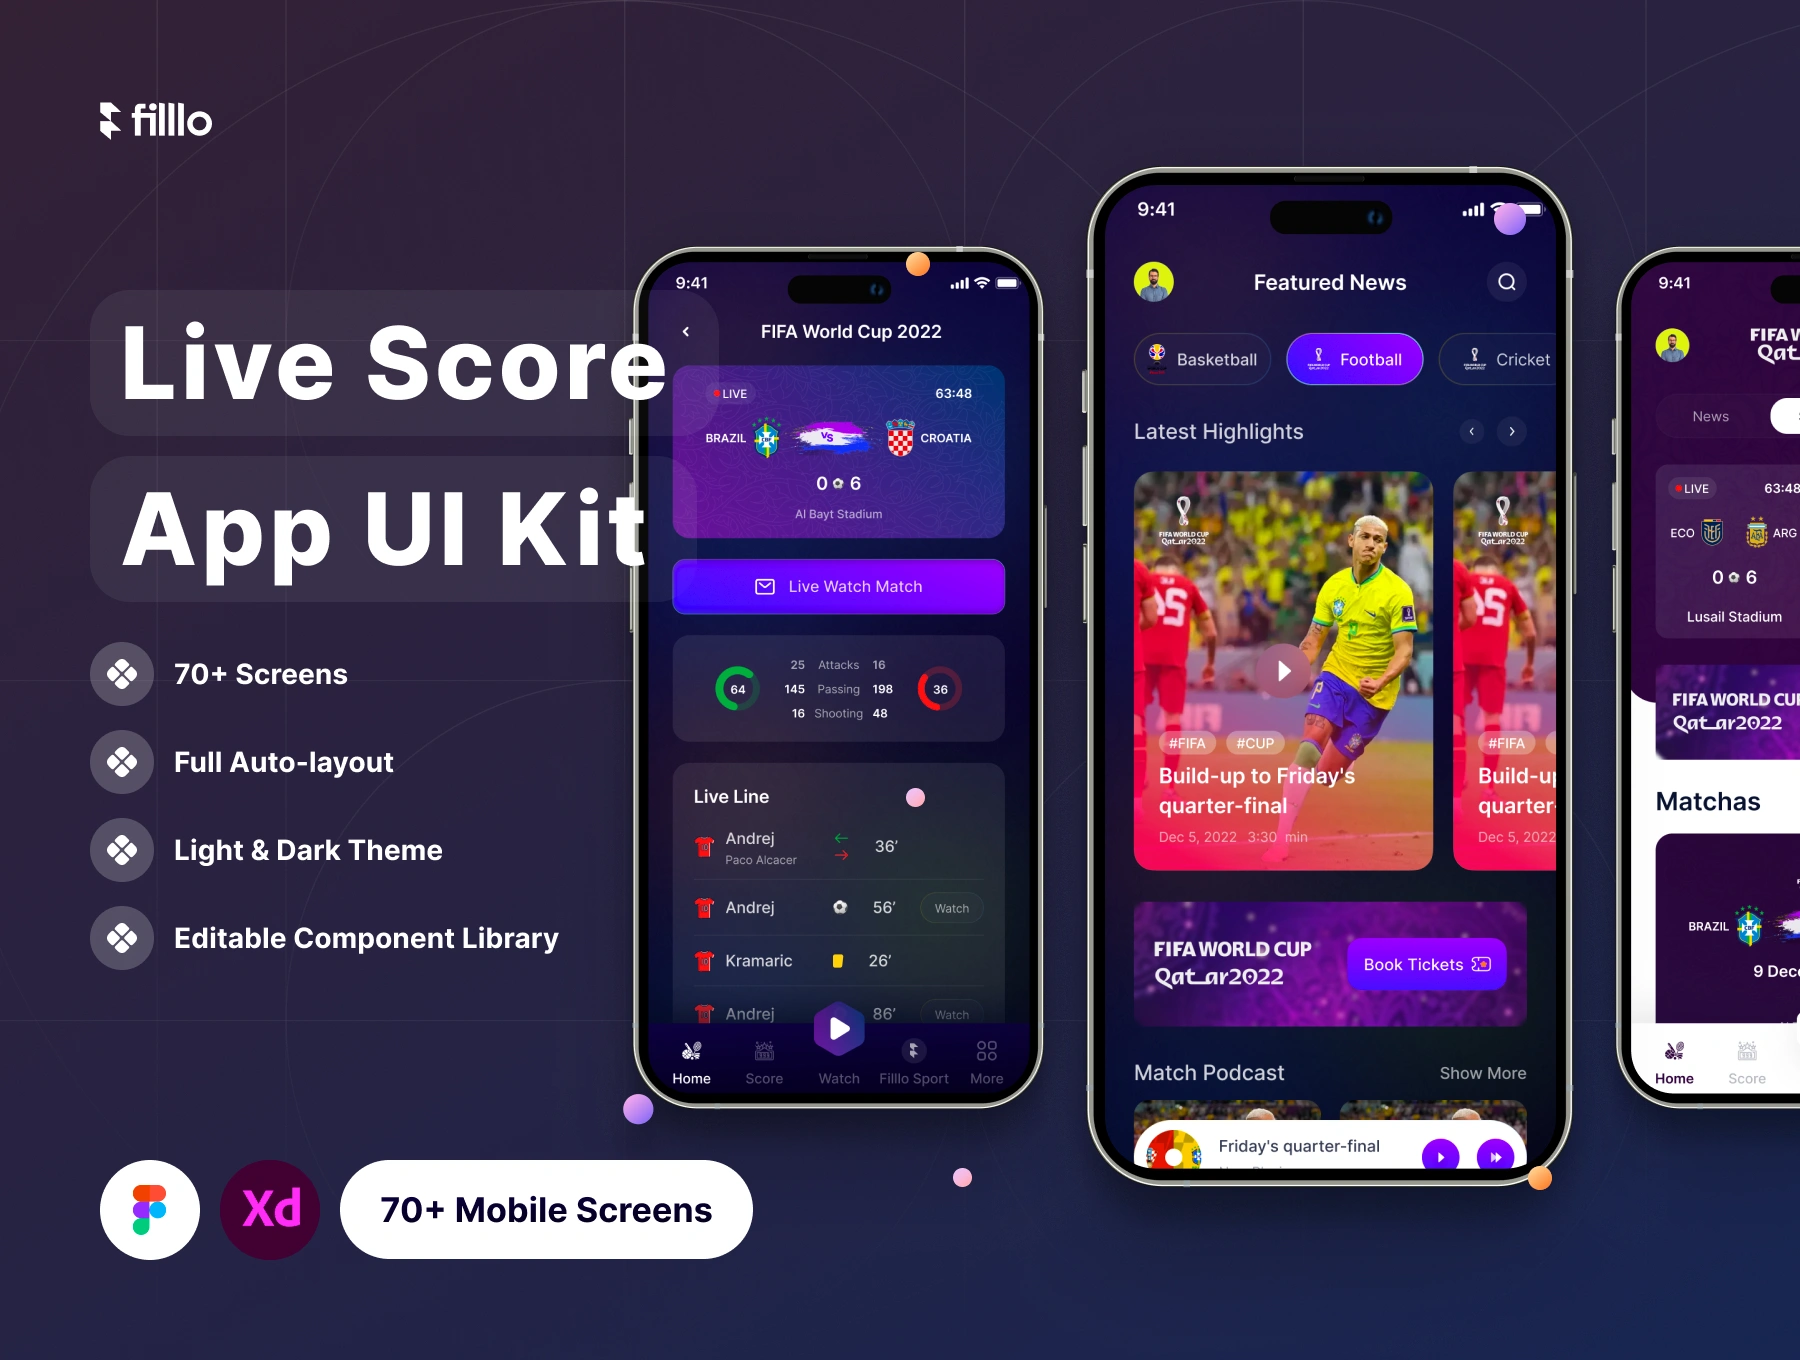 [VIP] Filllo Live Score App UI Kit